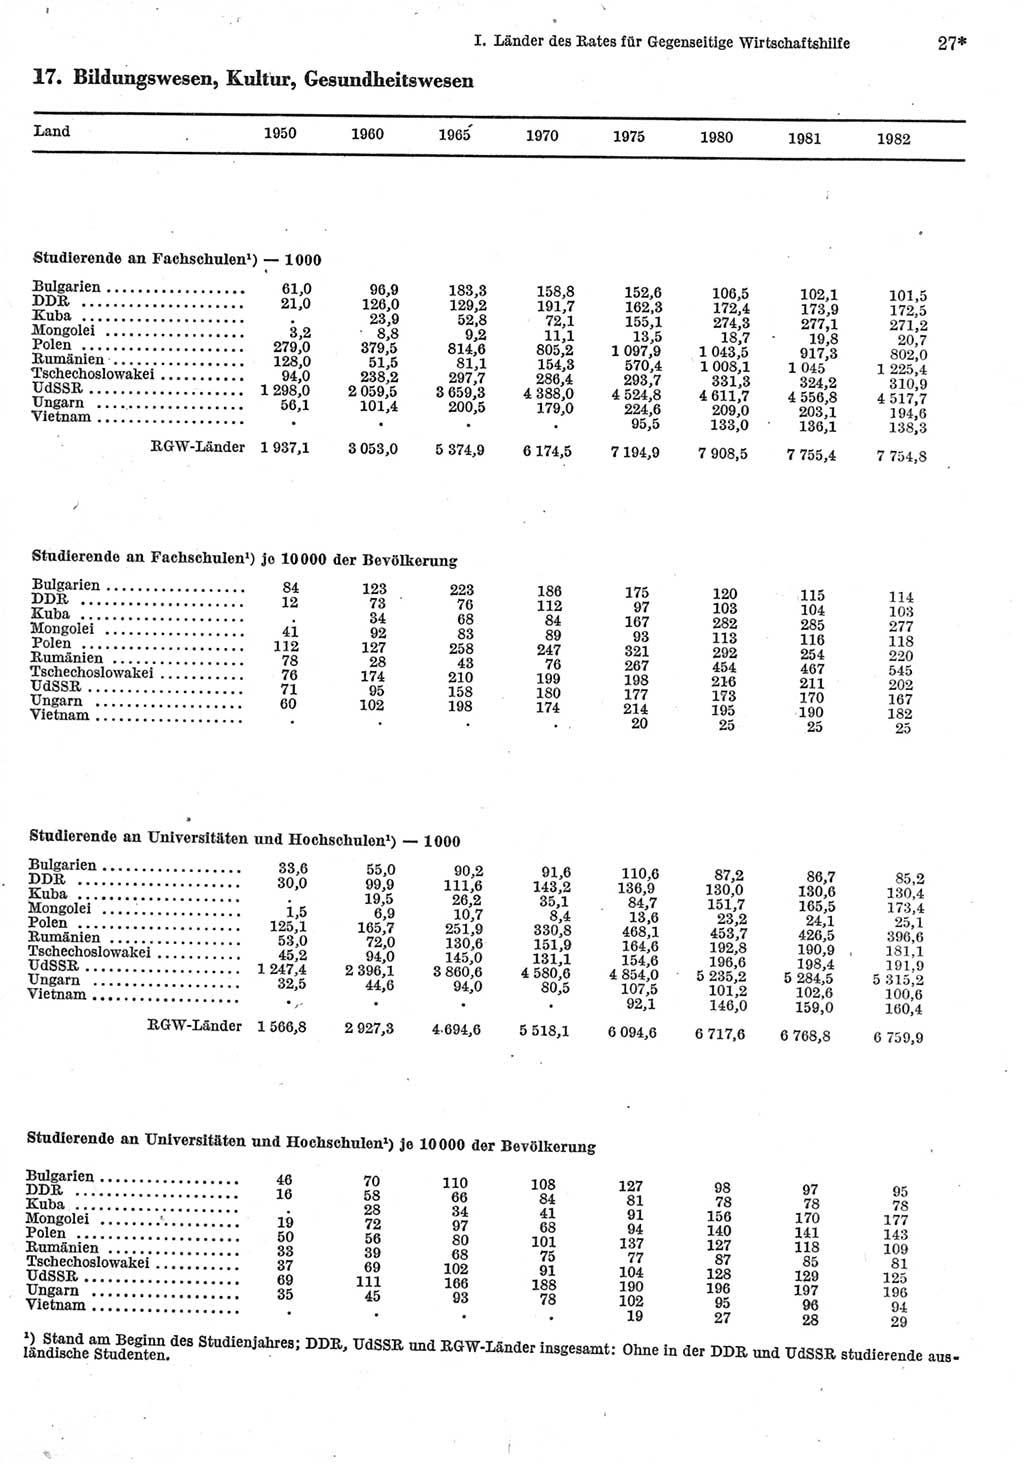 Statistisches Jahrbuch der Deutschen Demokratischen Republik (DDR) 1984, Seite 27 (Stat. Jb. DDR 1984, S. 27)